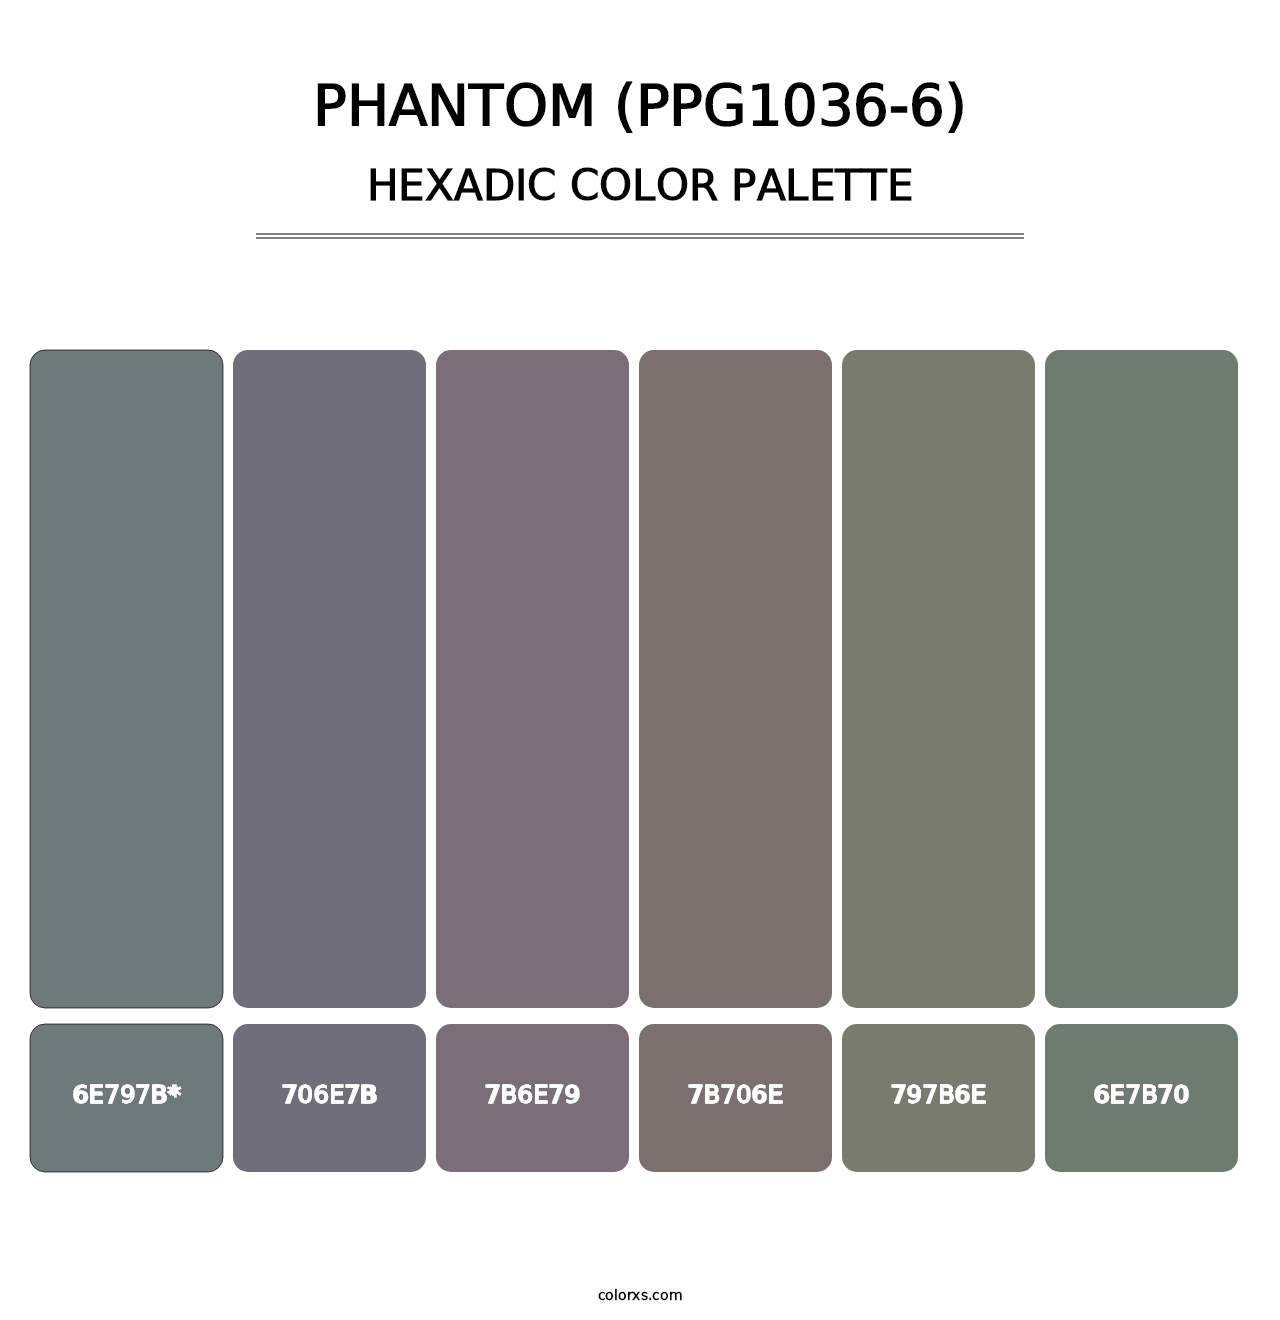 Phantom (PPG1036-6) - Hexadic Color Palette